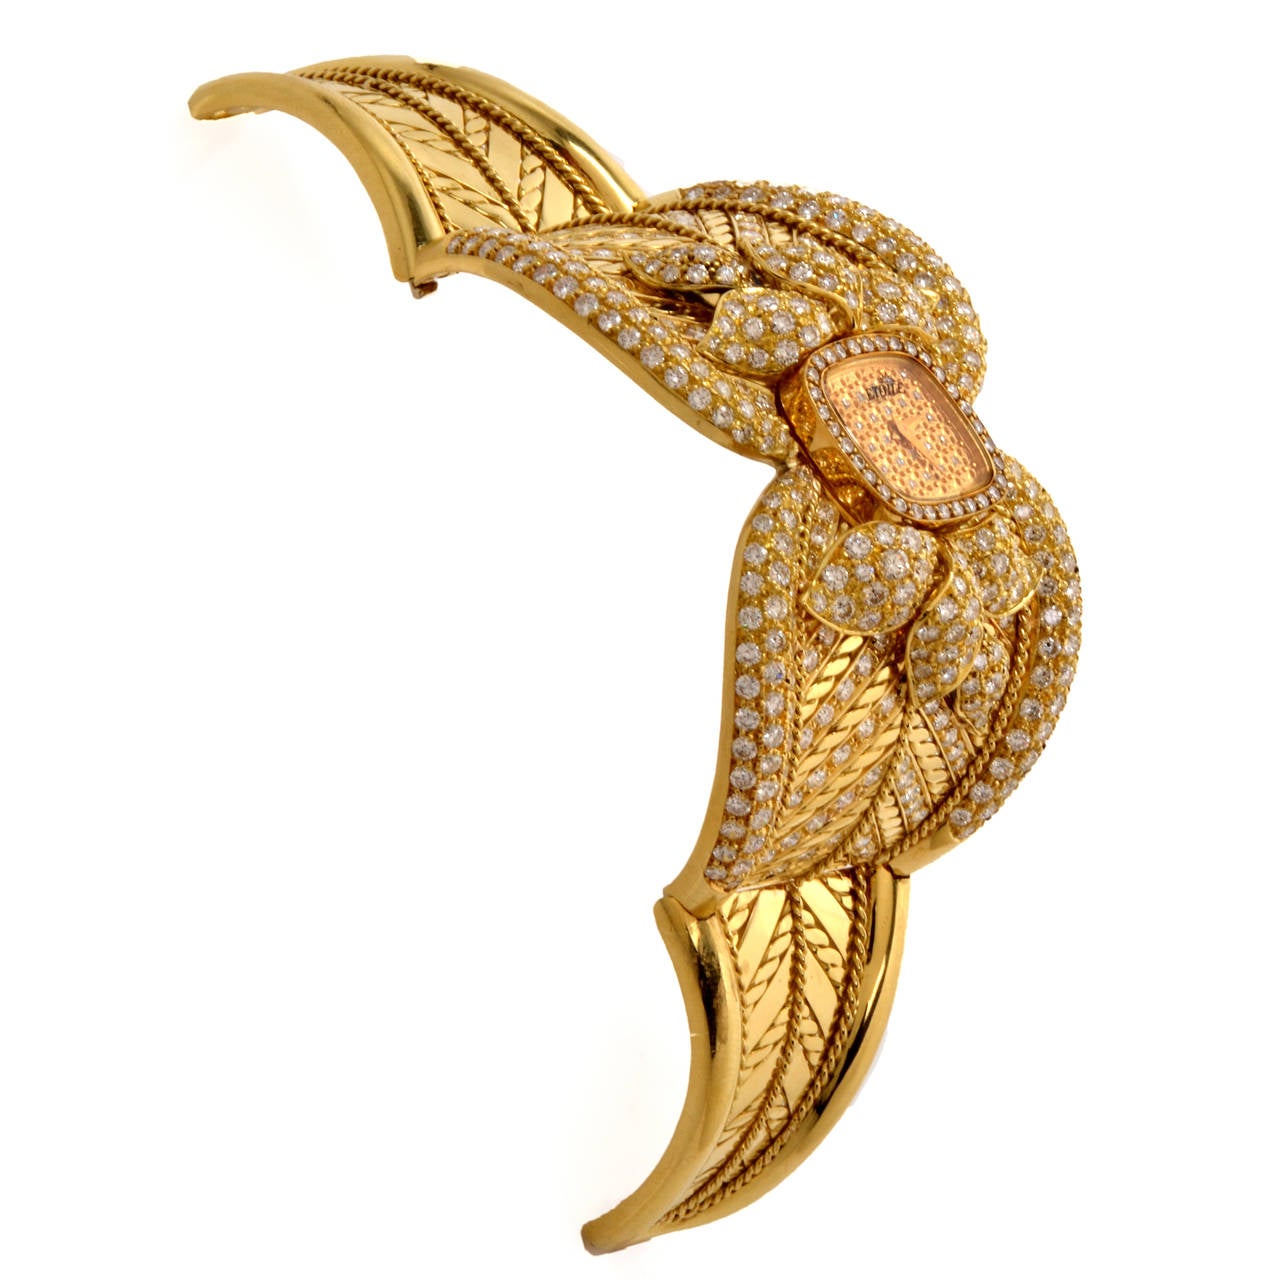 Women's Etoile Lady's Yellow Gold and Diamond Cuff Bracelet Watch